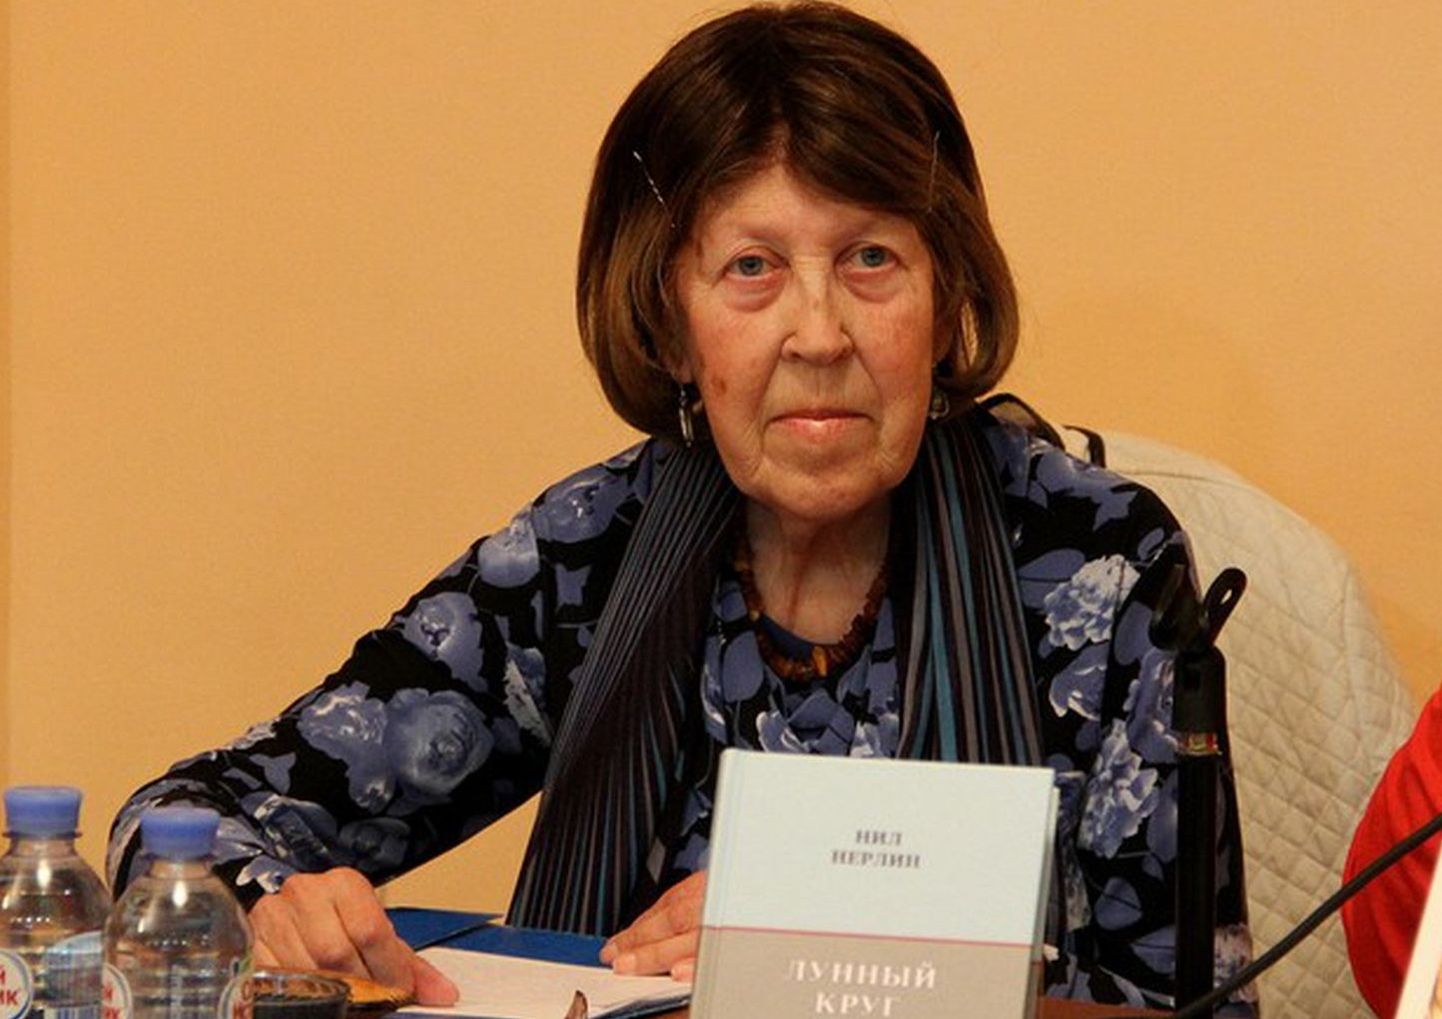 Людмила Францевна прилагала личные усилия для популяризации материалов о работе правозащитного движения в СССР, борьбе за свободу слова и национальную независимость.